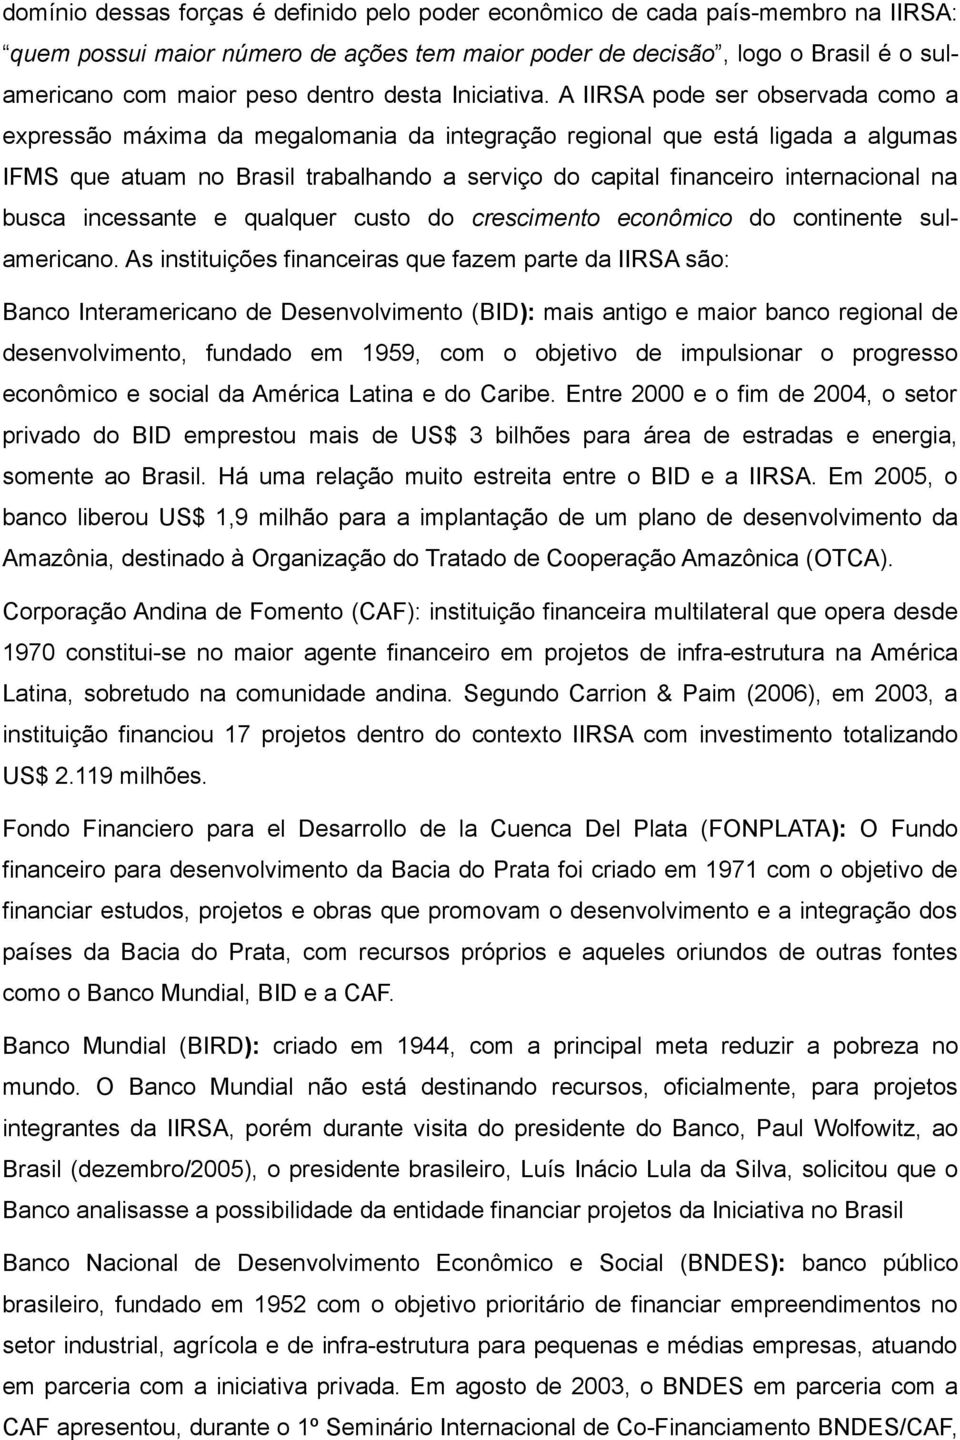 A IIRSA pode ser observada como a expressão máxima da megalomania da integração regional que está ligada a algumas IFMS que atuam no Brasil trabalhando a serviço do capital financeiro internacional